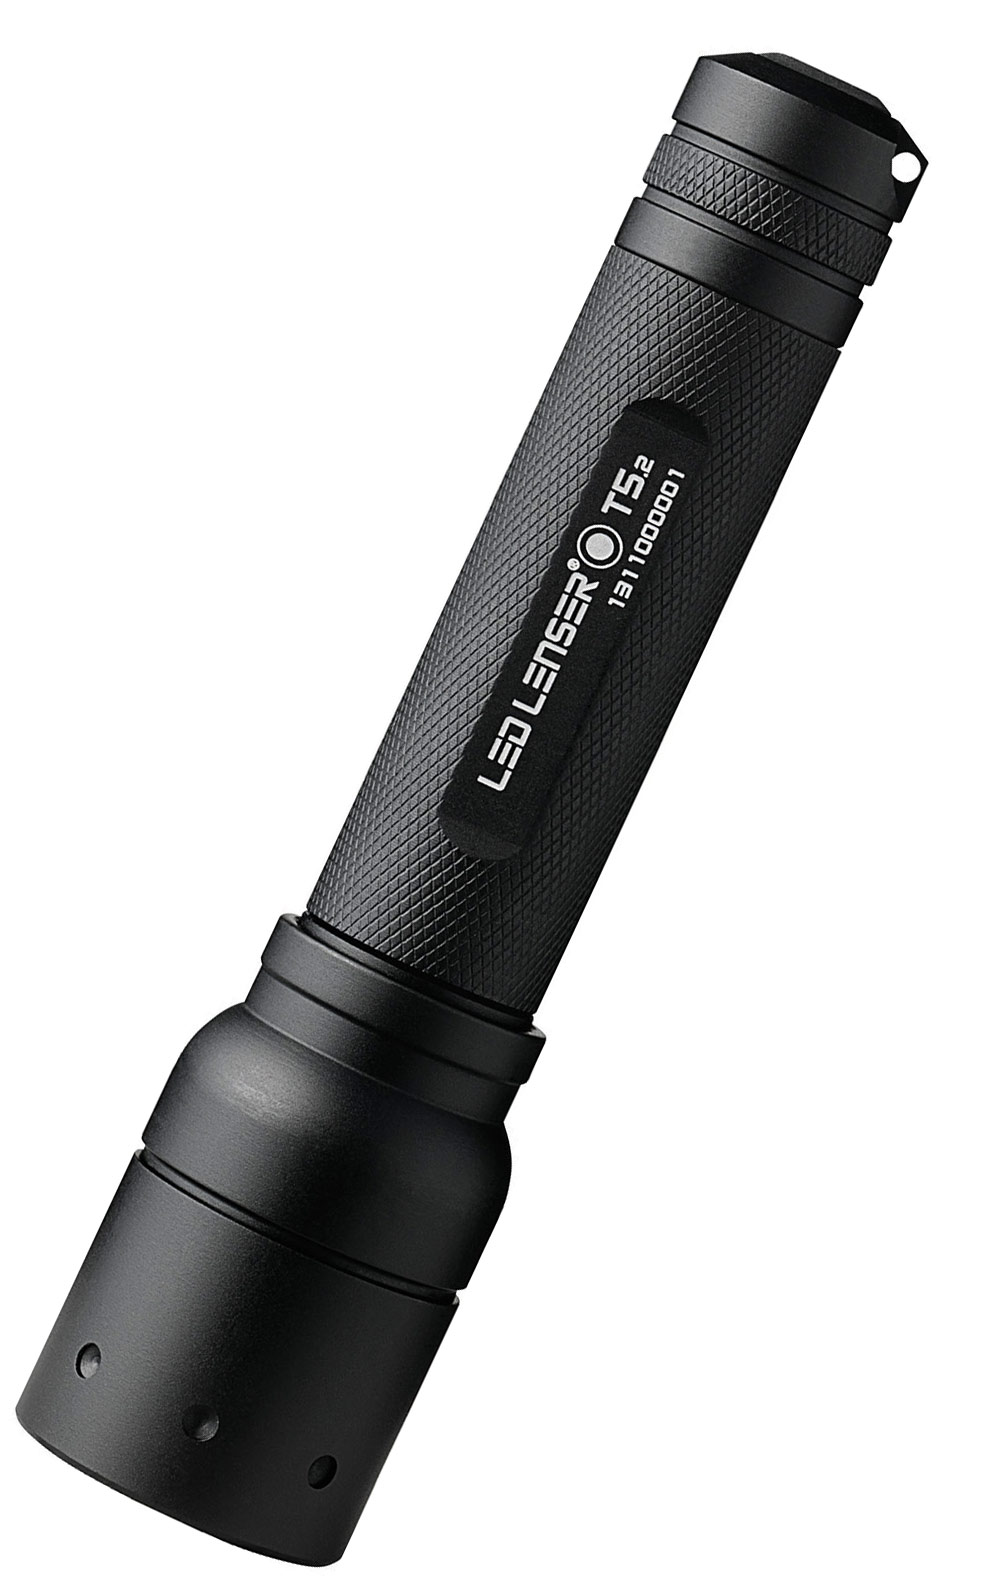 LED Lenser T5.2